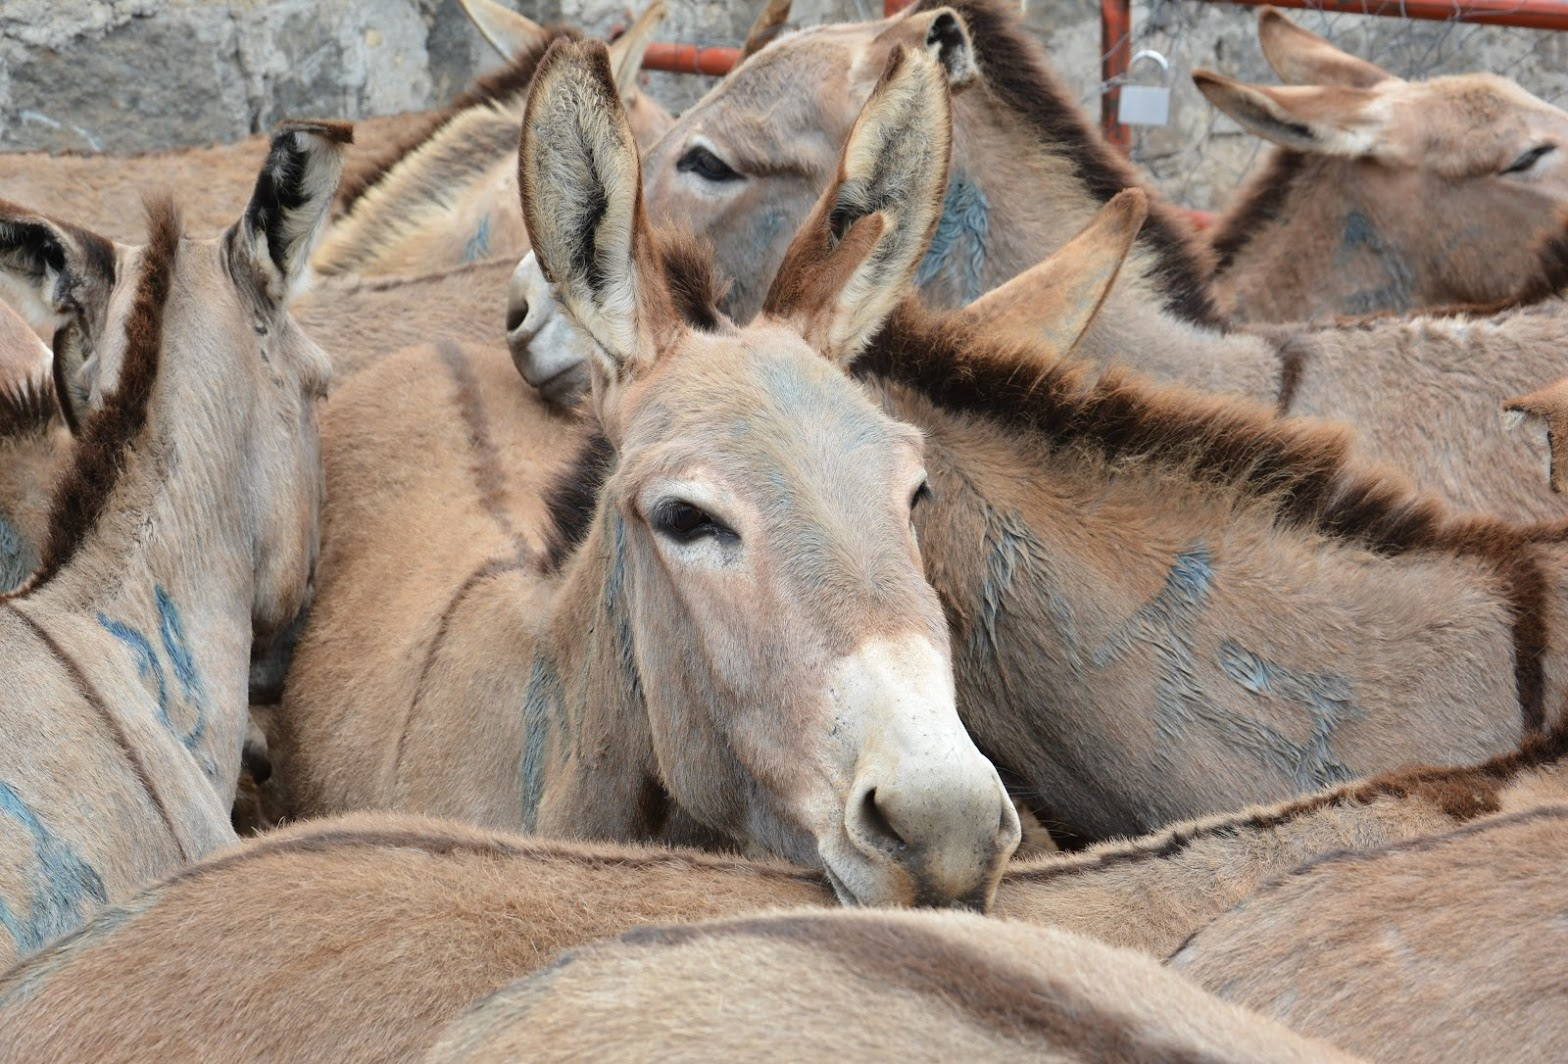 Donkeys in pen waiting slaughter